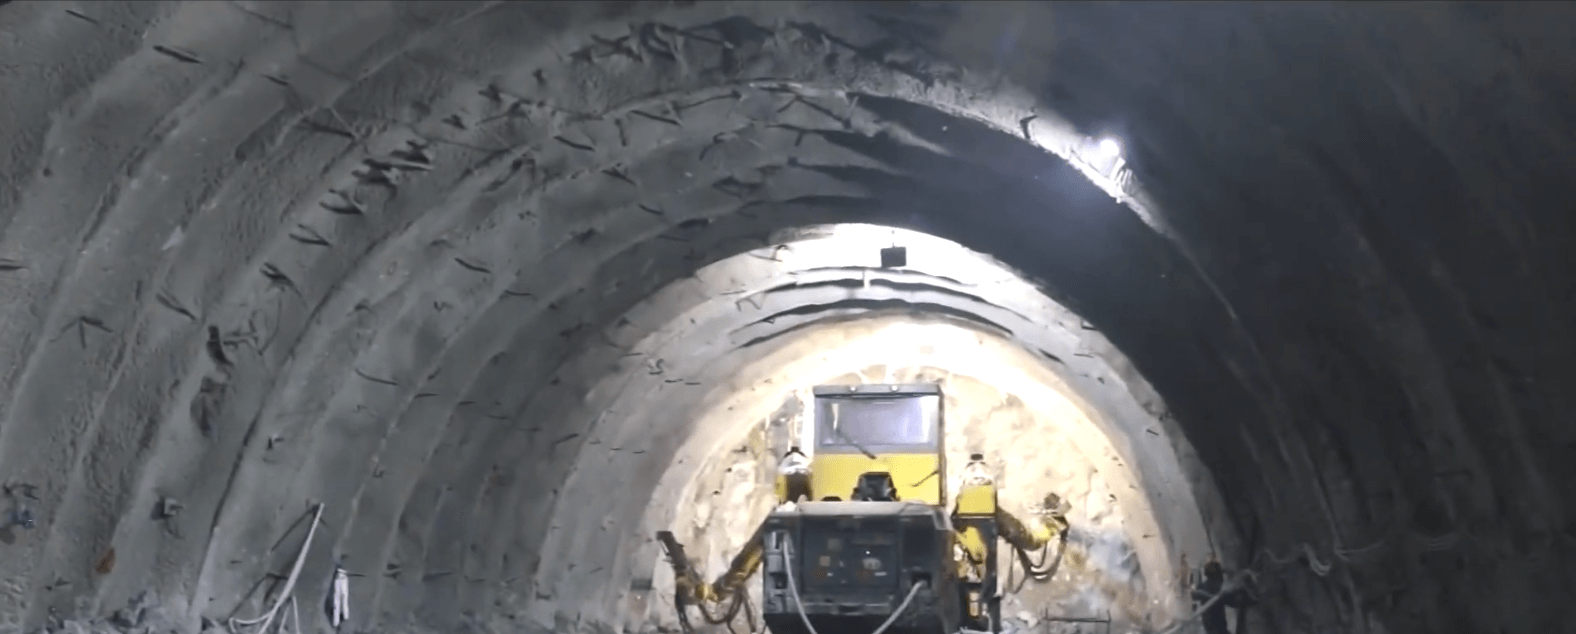 Túnel GGE: nuevo hito para ingeniería antioqueña